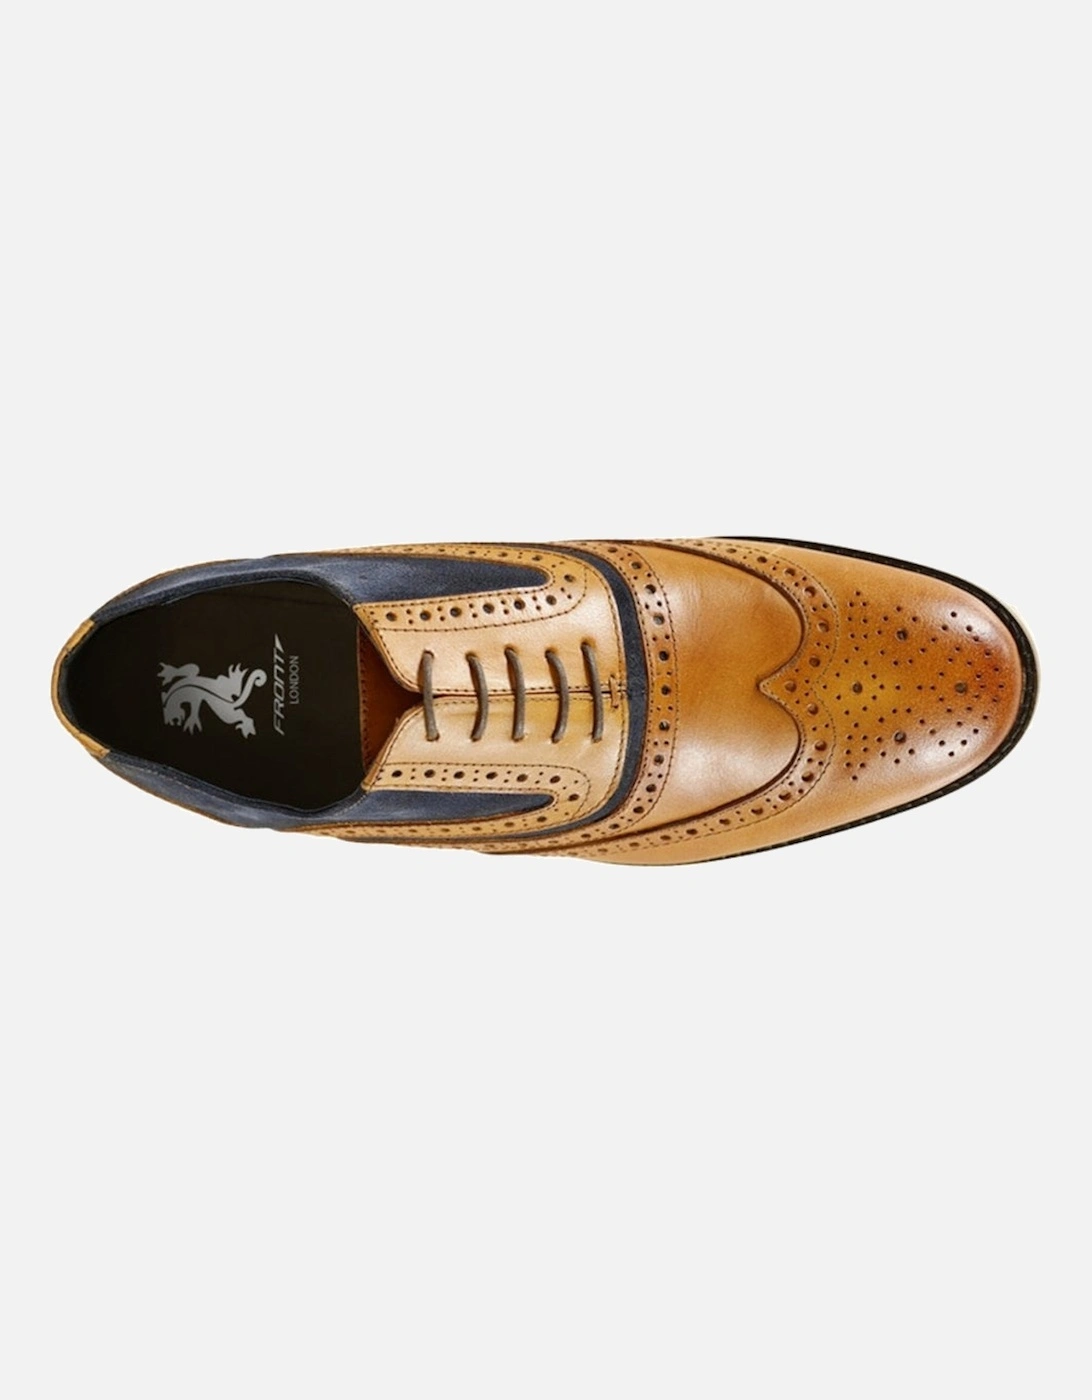 Spencer Brogue Shoes - Tan & Navy